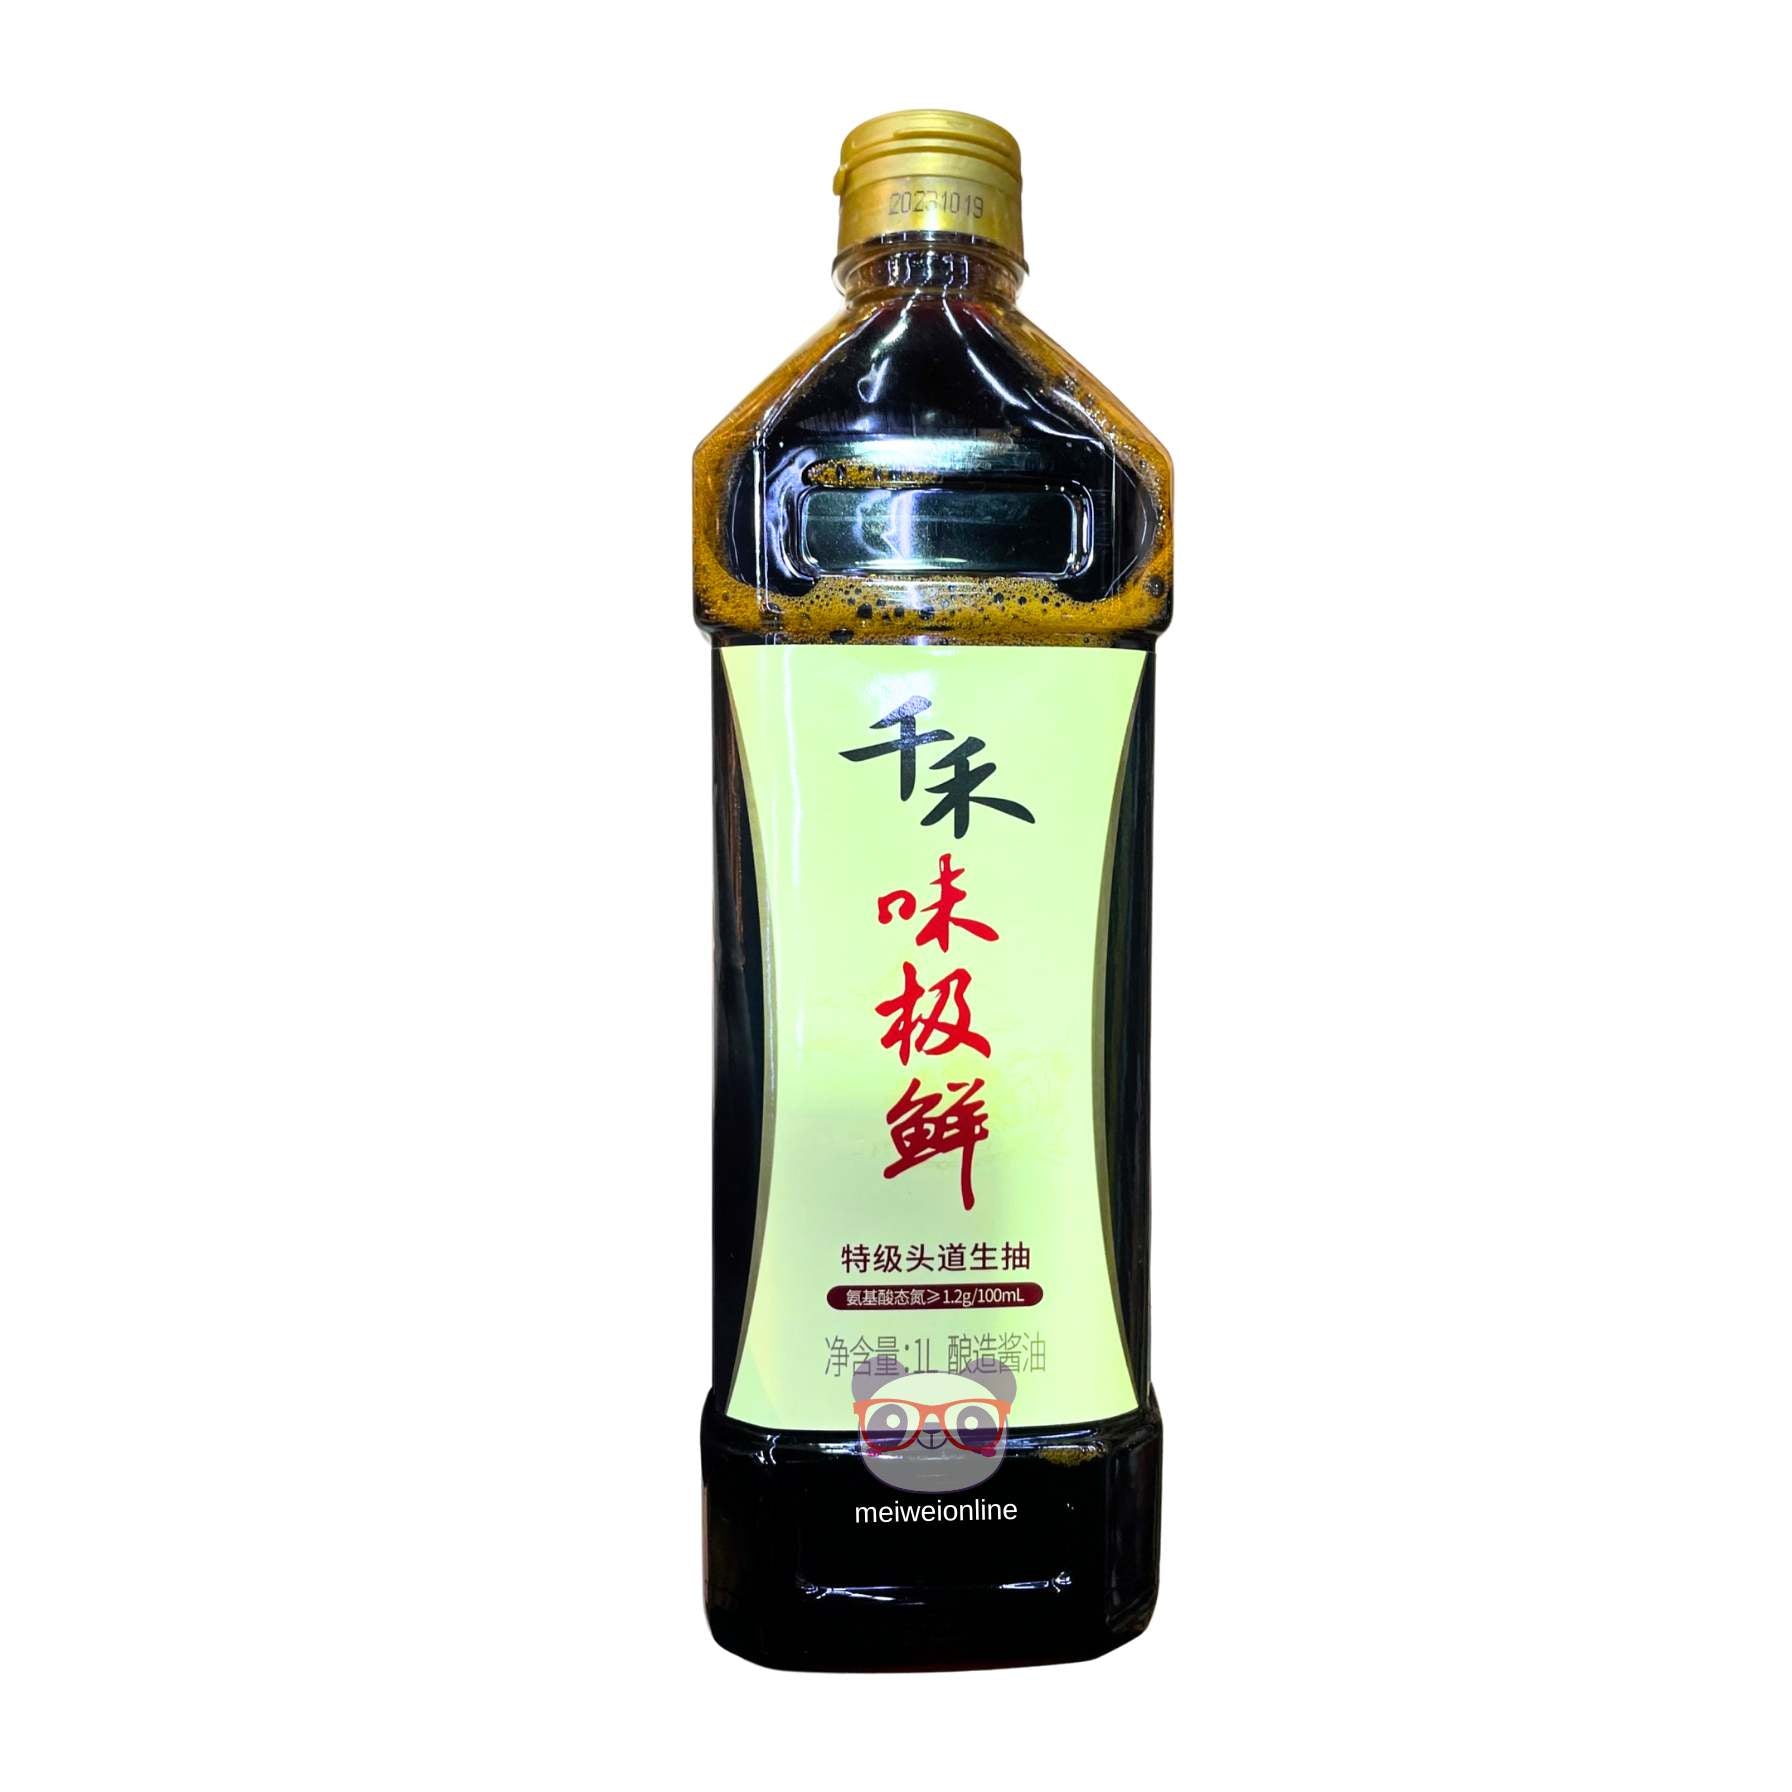 Molho de soja premium - Qianhe 1L